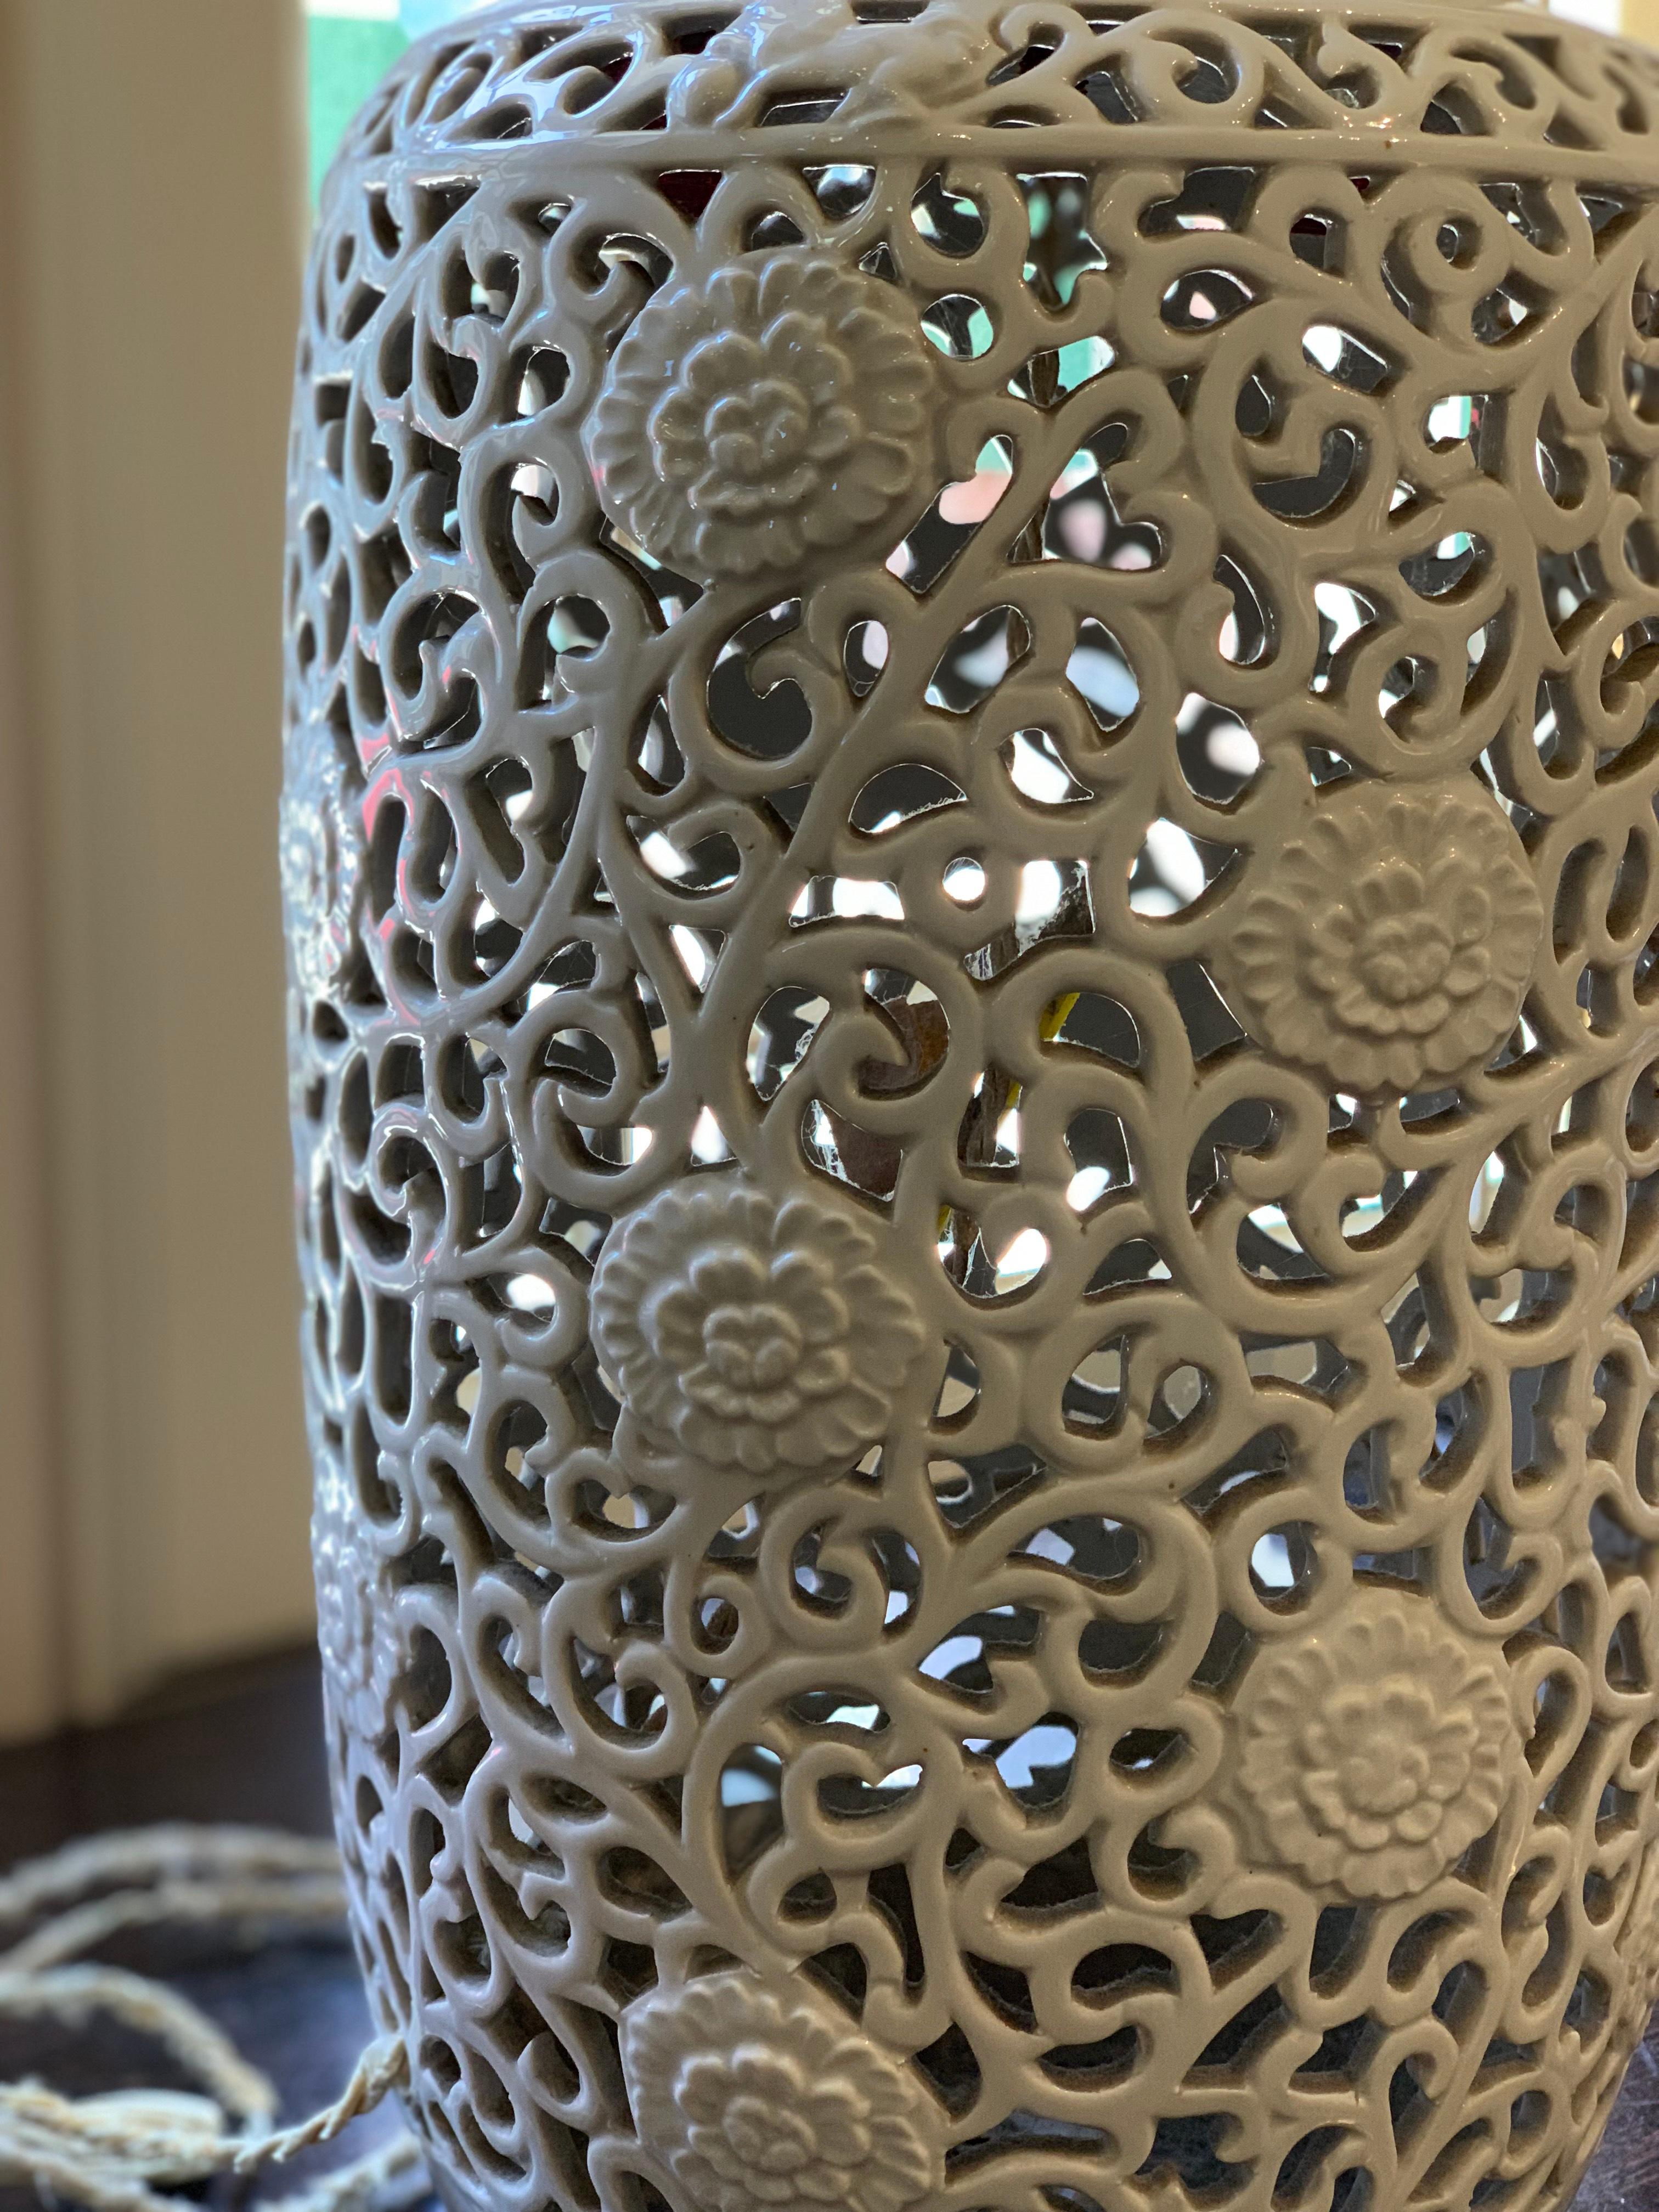 Ein exquisites Paar durchbrochener Emaille-Lampensockel mit floralen Motiven, die an den Seiten hochklettern, in ausgezeichnetem Zustand aus der Mitte des 20. Jahrhunderts. Jede Blüte ist mit Ranken verbunden, die die geschwungene Form des Sockels